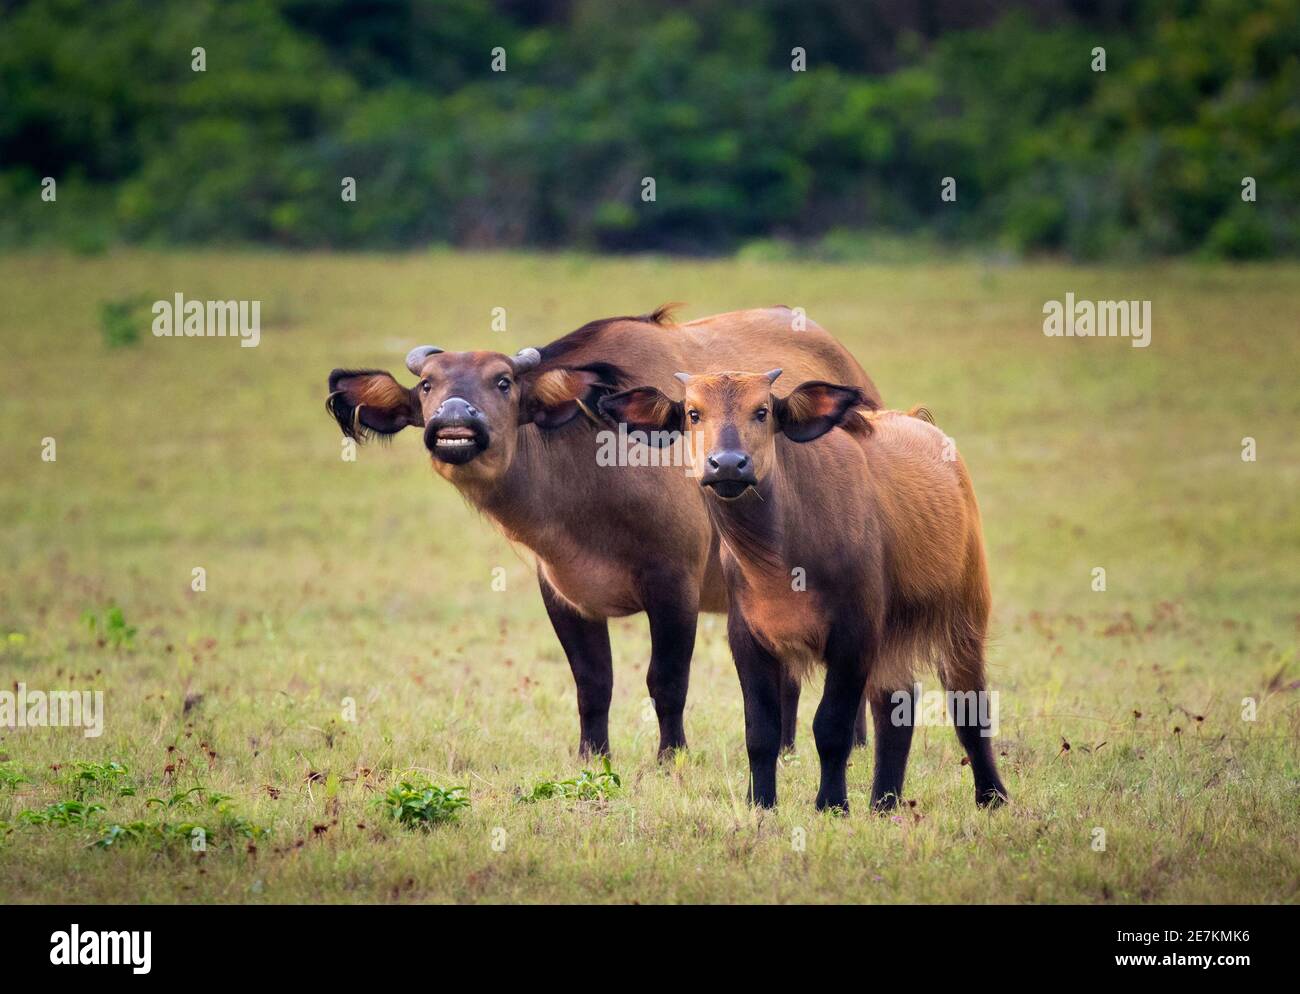 Forêt africaine ou Dwarf Buffalo (Syncerus caffer nanus) mère et jeune, Parc national de Loango, Gabon, Afrique centrale. Banque D'Images